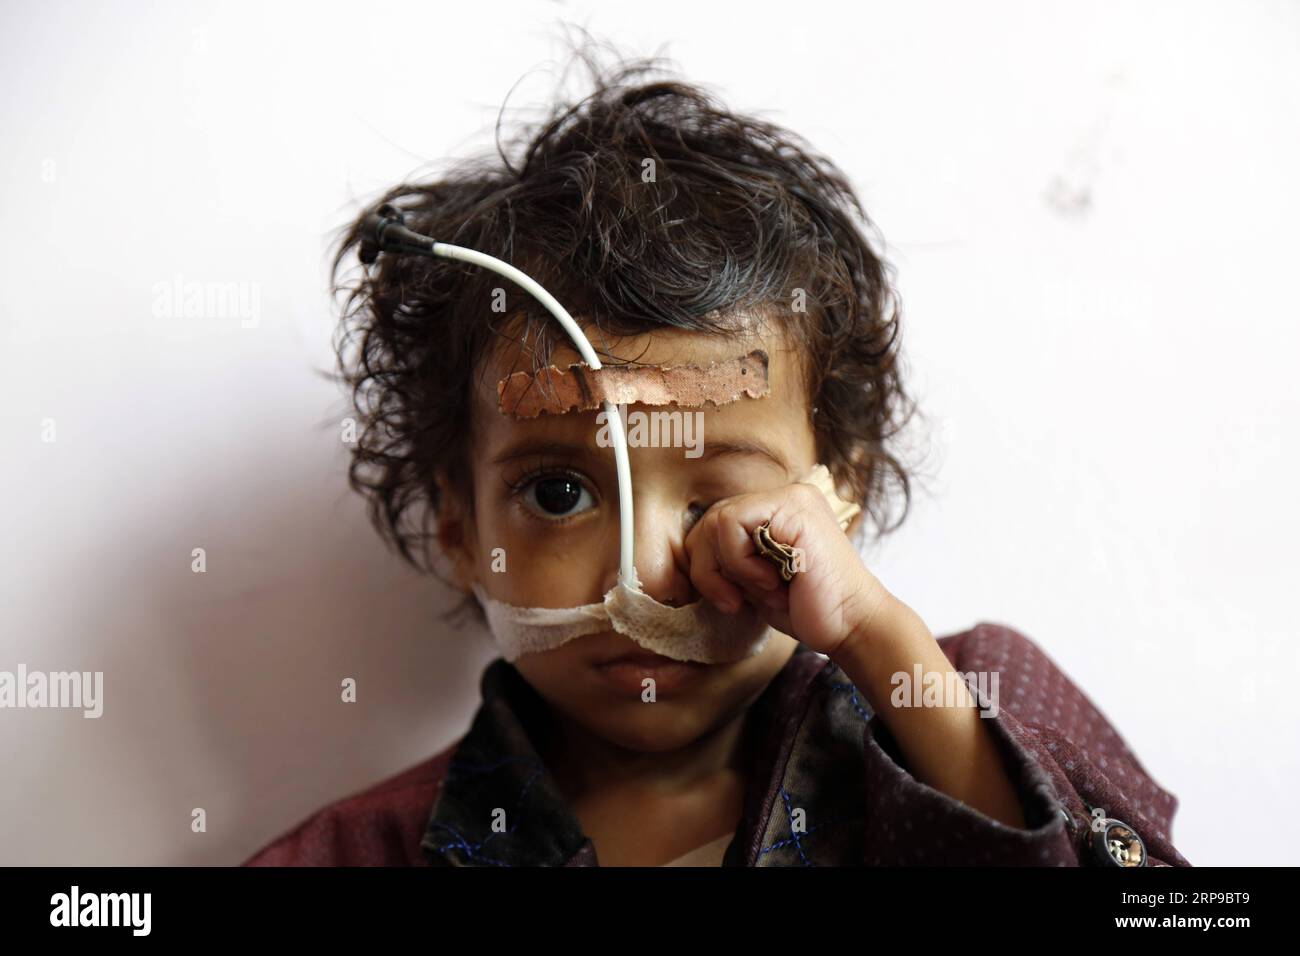 (190402) -- PECHINO, 2 aprile 2019 -- Un bambino malnutrito siede a letto mentre riceve cure mediche in un centro di cura per la malnutrizione a Sanaa, Yemen, il 1° aprile 2019. Secondo il Fondo delle Nazioni Unite per l'infanzia (UNICEF), circa 394.000 bambini yemeniti sotto i 5 anni soffrono di grave malnutrizione acuta e necessitano di cure. XINHUA FOTO DEL GIORNO MohammedxMohammed PUBLICATIONxNOTxINxCHN Foto Stock